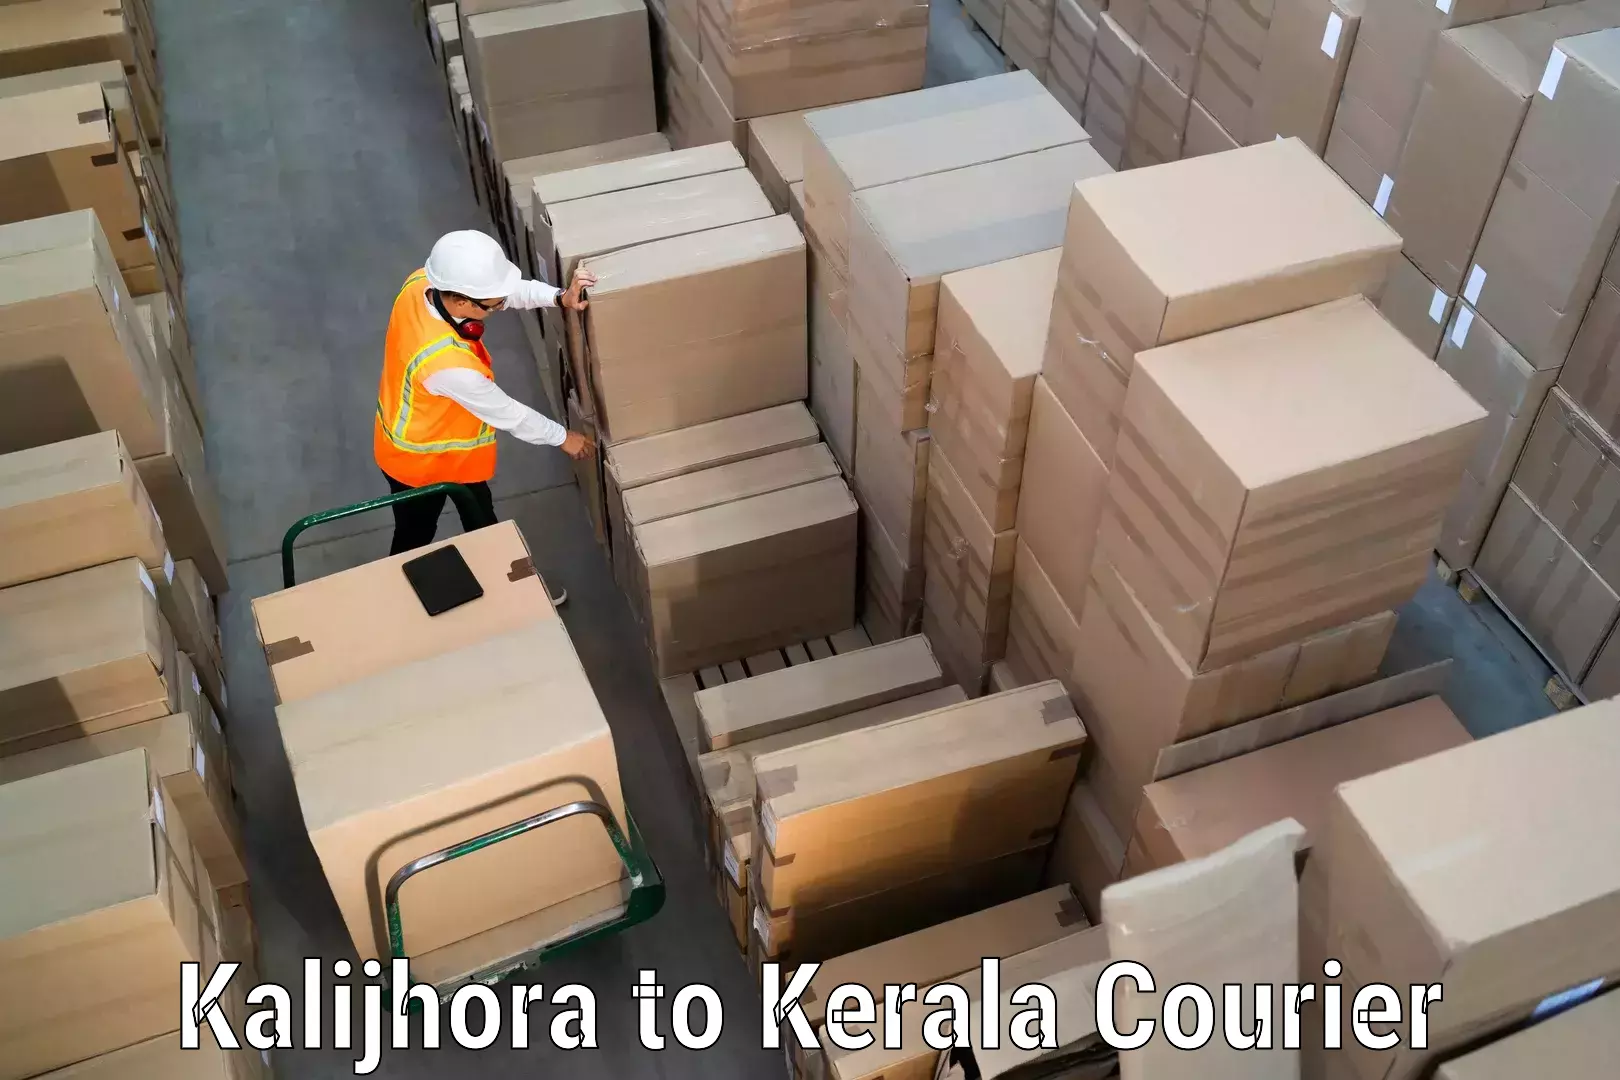 Courier dispatch services Kalijhora to Kochi